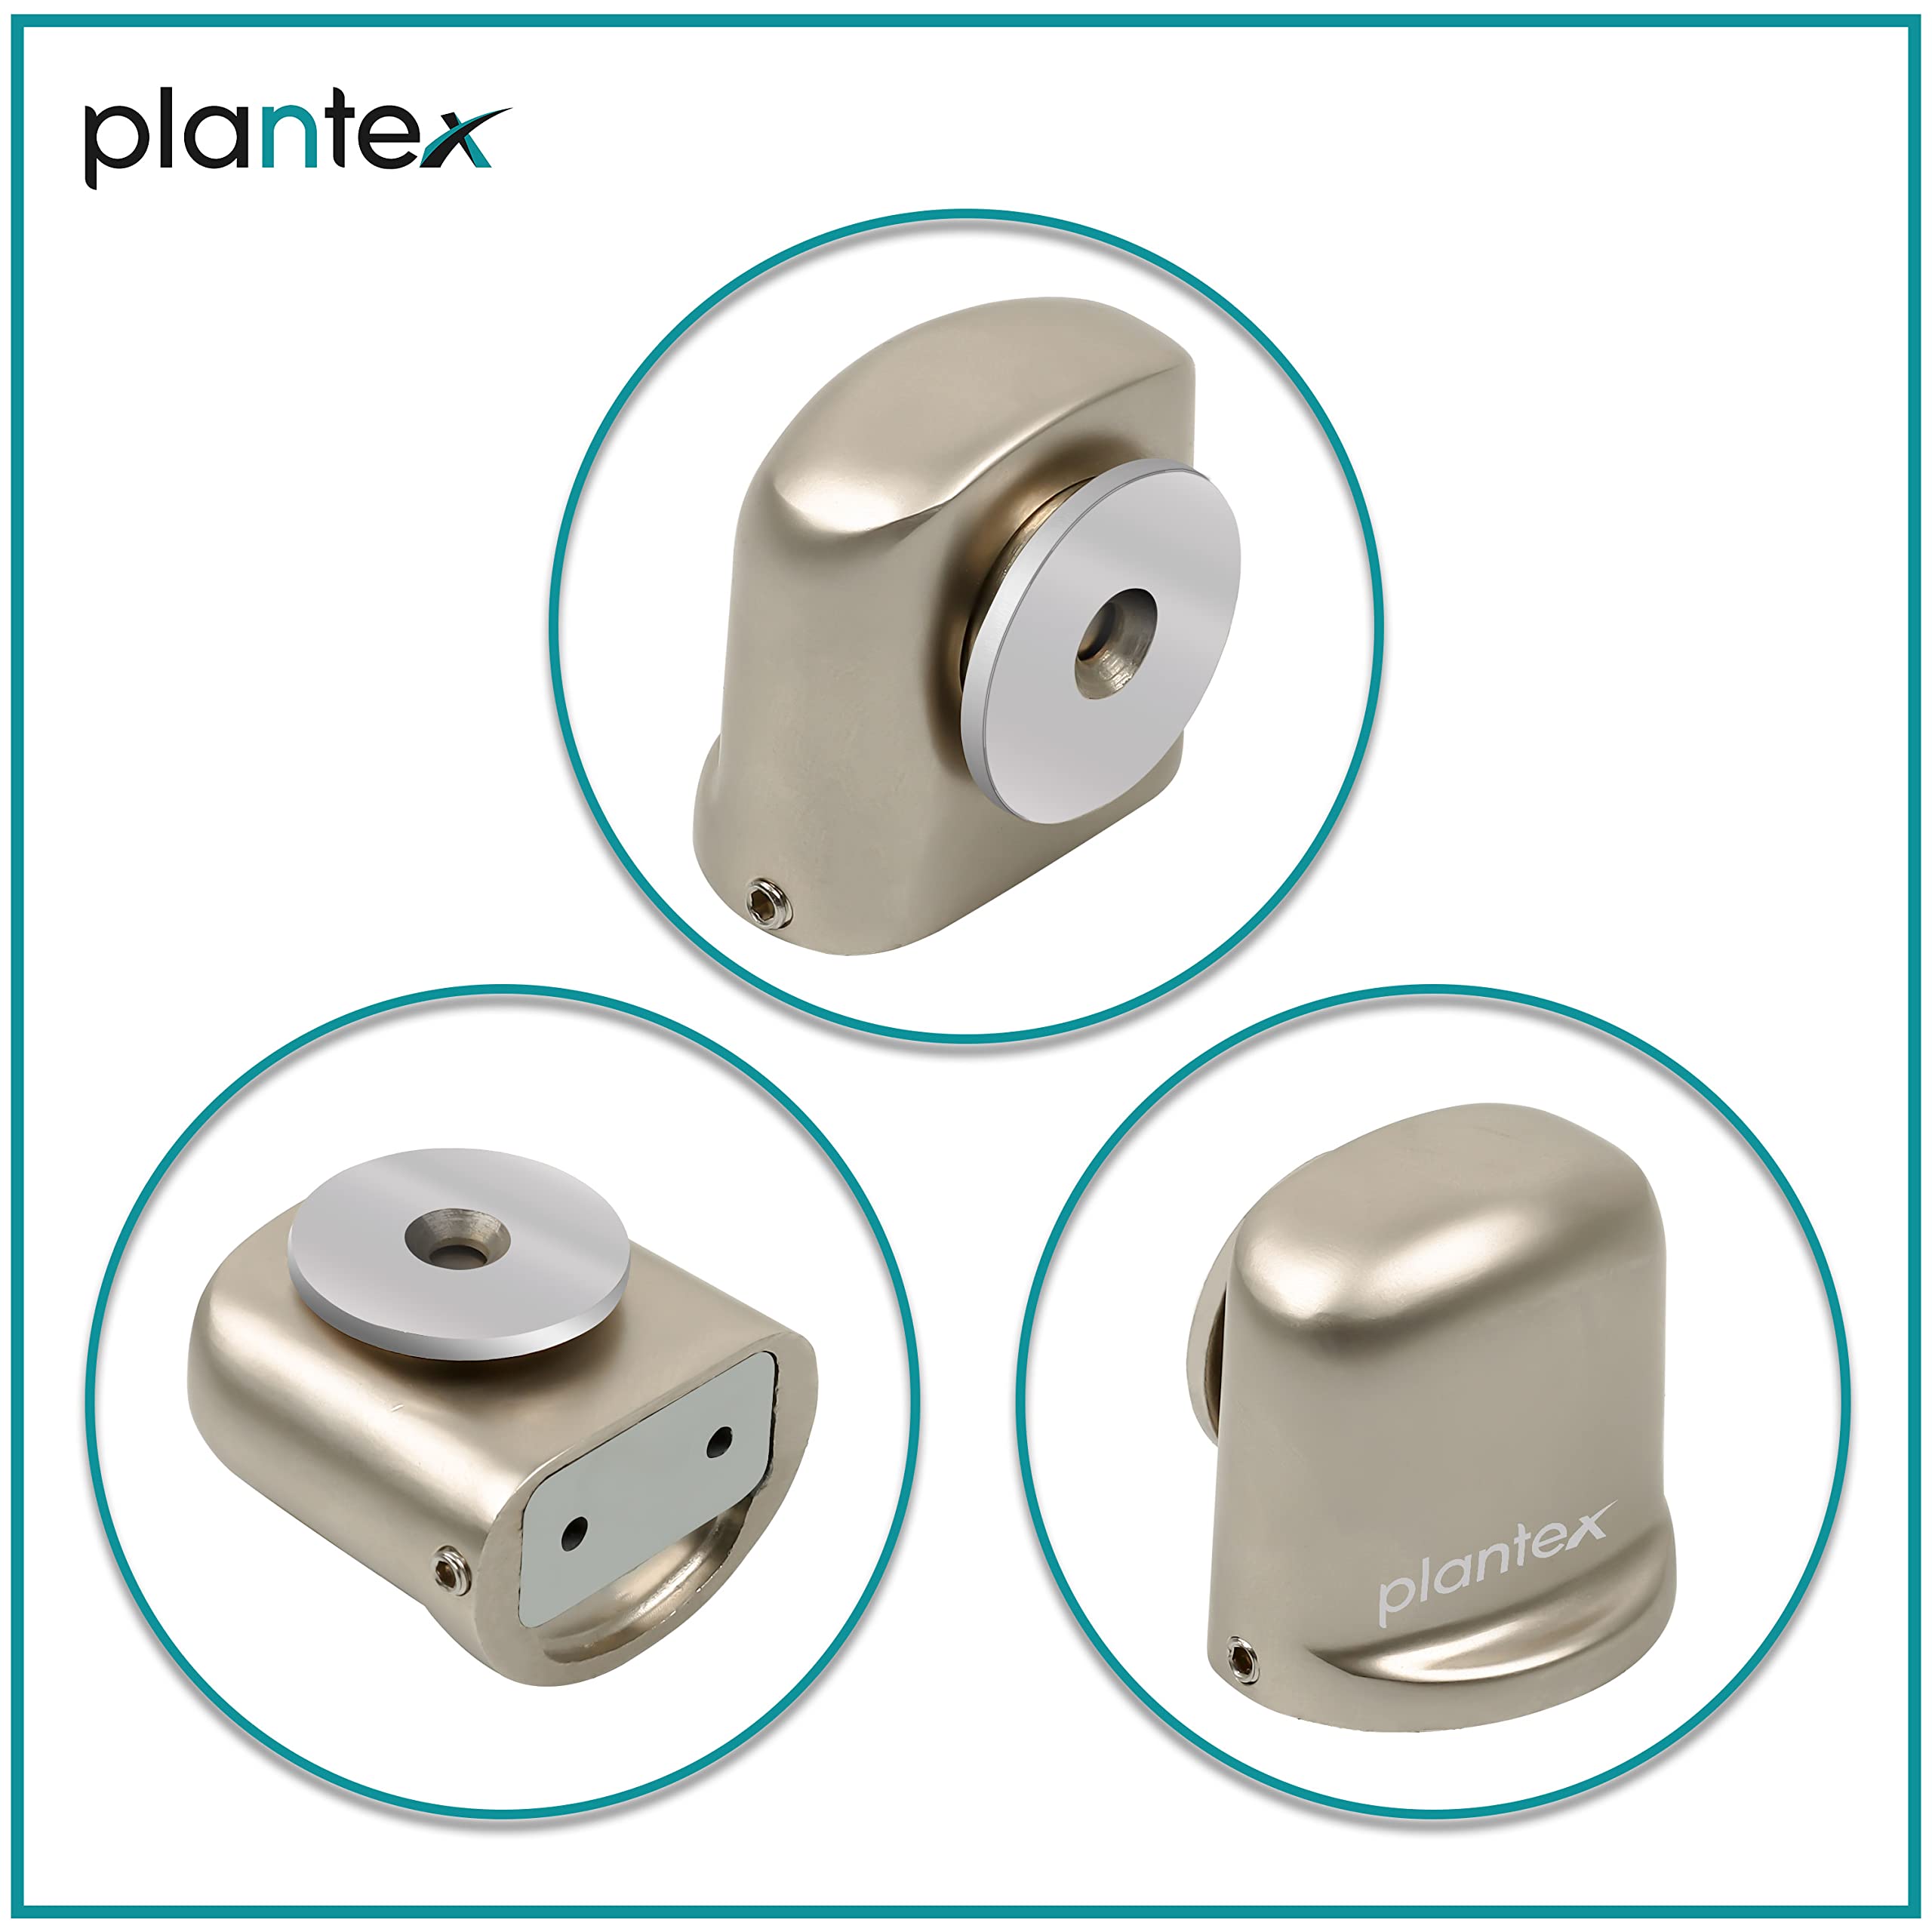 Plantex Heavy Duty Door Magnet Stopper/Door Catch Holder for Home/Office/Hotel, Floor Mounted Soft-Catcher to Hold Wooden/Glass/PVC Door - Pack of 8 (193 - Satin Matt)